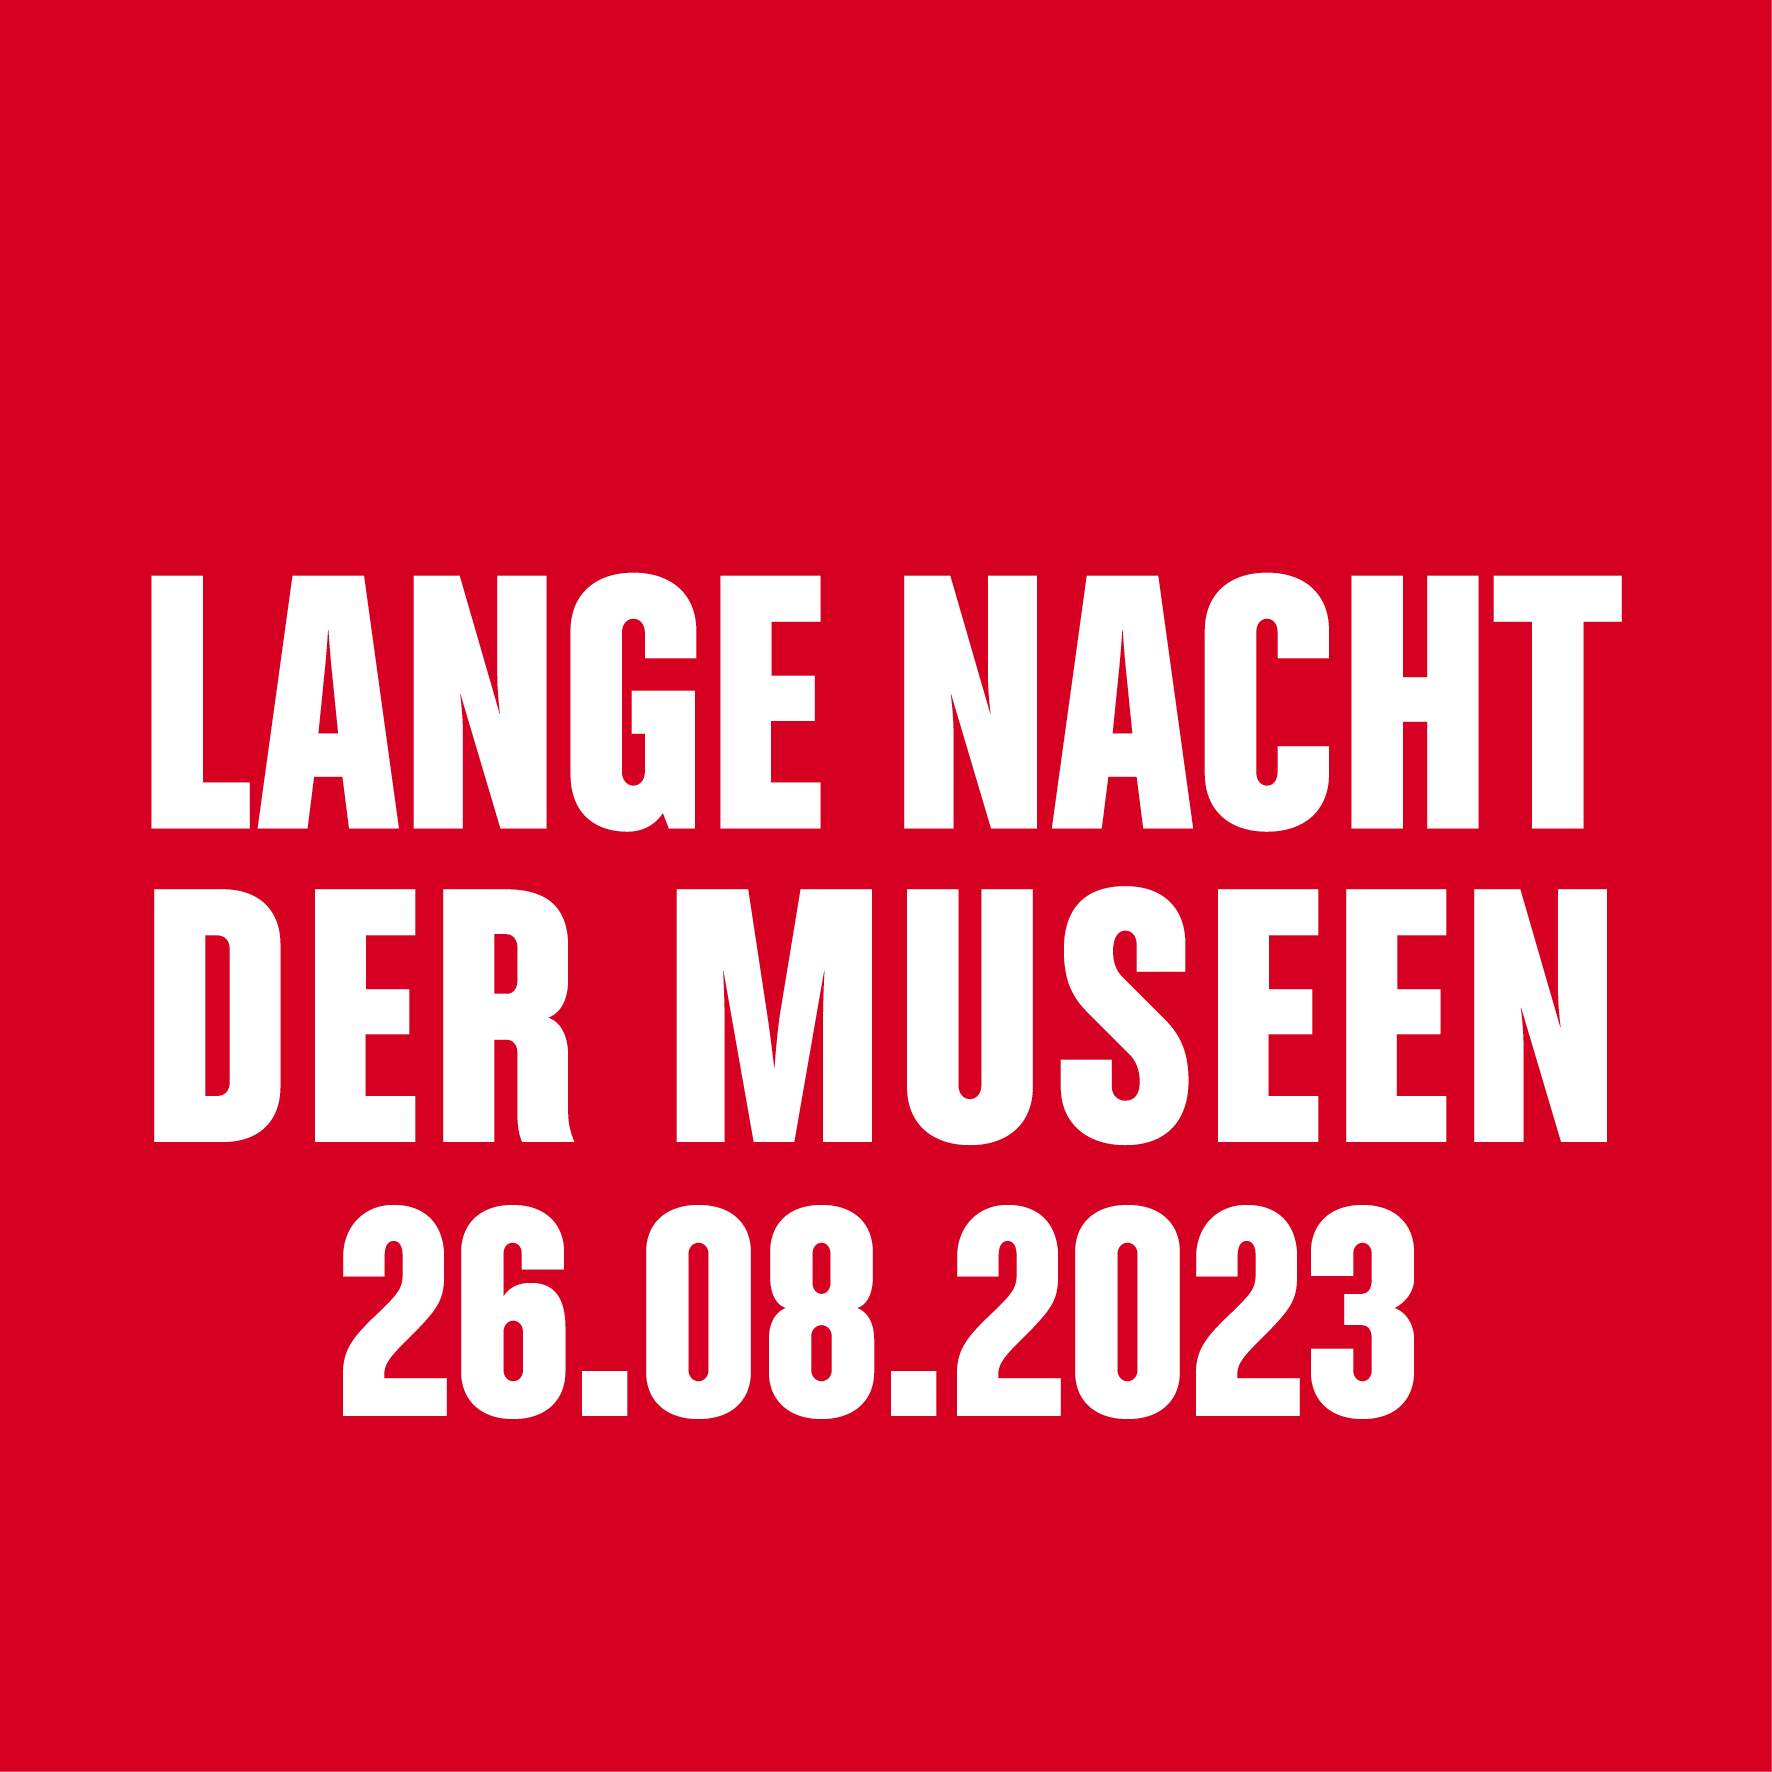 (c) Lange-nacht-der-museen.de